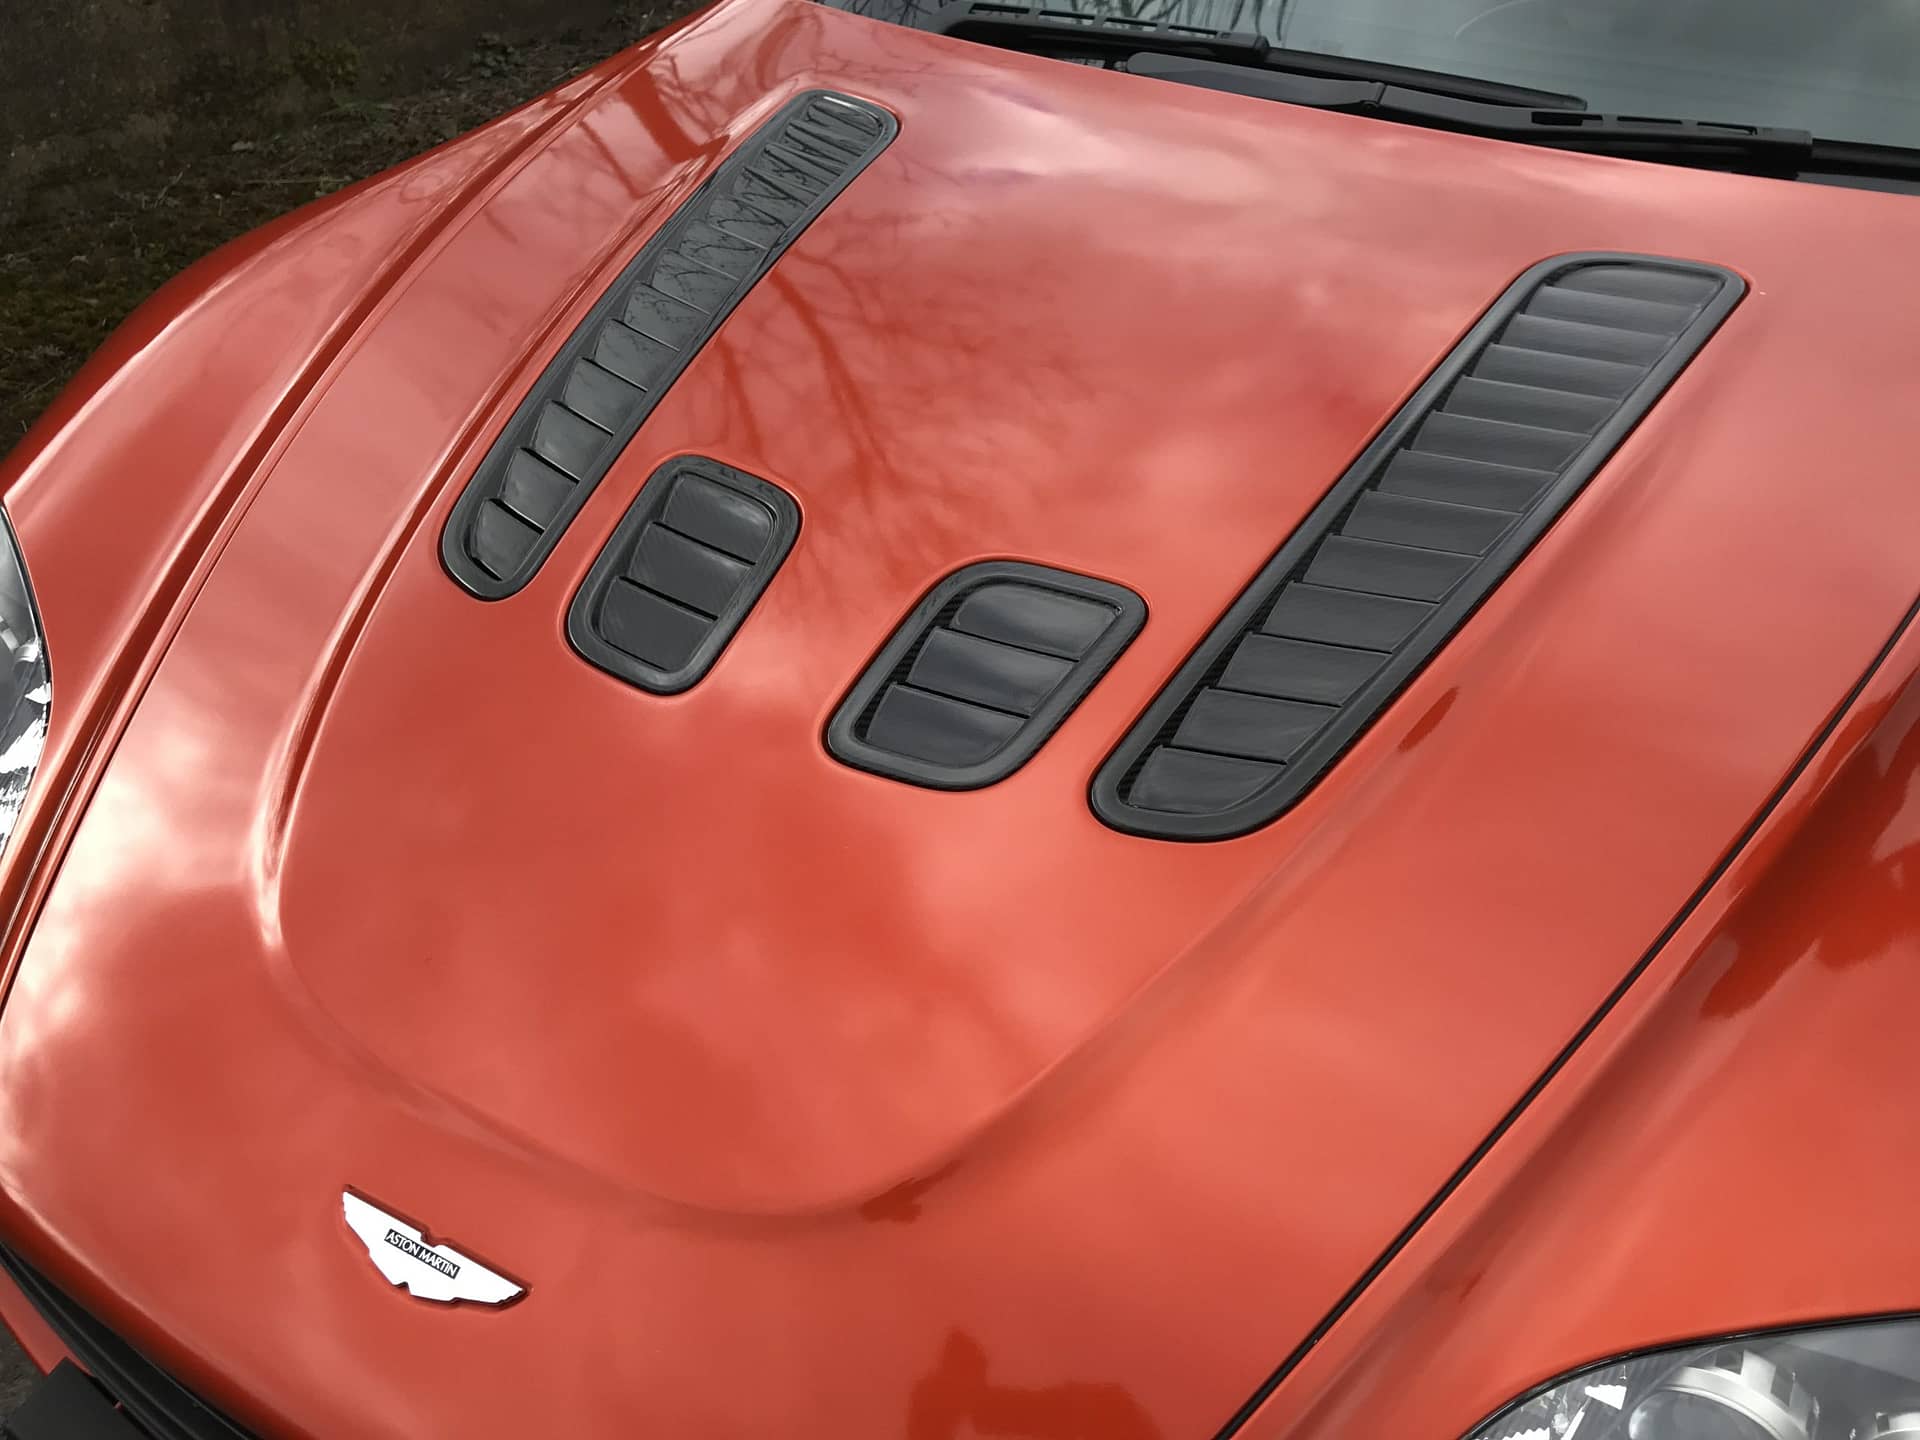 Aston Martin wraps near me